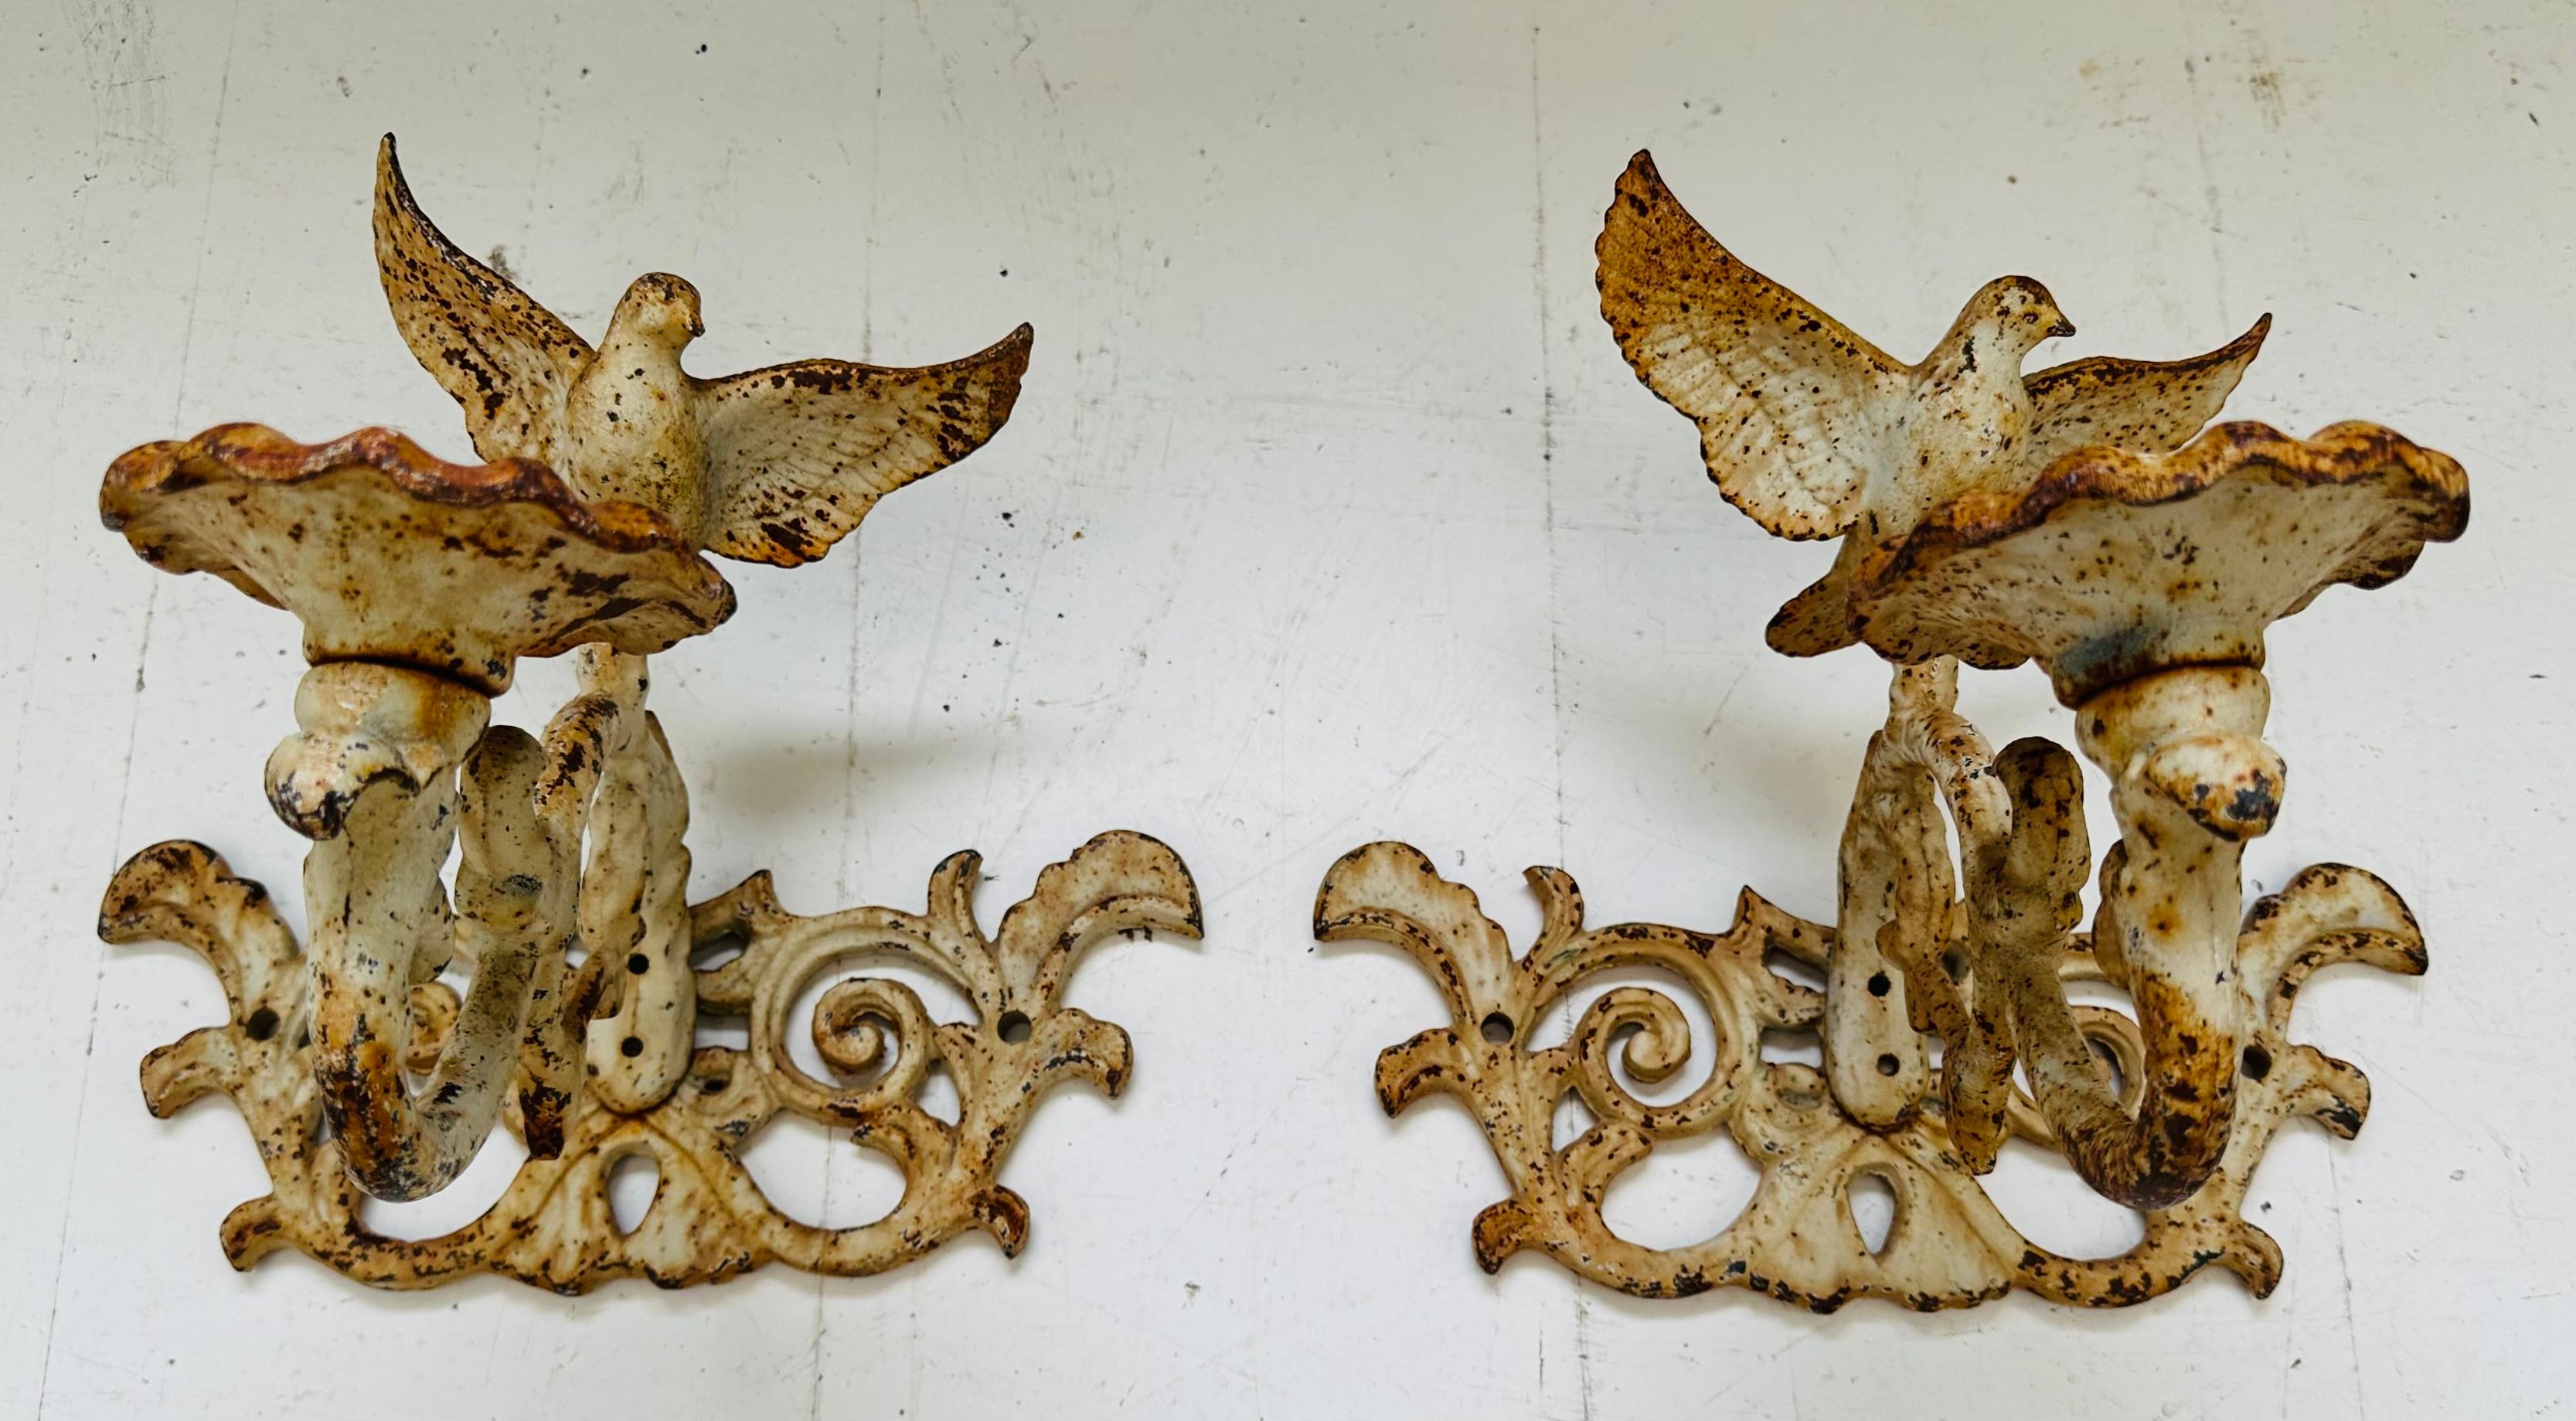 Paar gusseiserne, rustikale Gartenkerzenhalter aus dem späten neunzehnten und frühen zwanzigsten Jahrhundert.  Entstanden in Kuba um die Zeit von 1890-1900. 

Jeder Kerzenständer ist mit einer Taube mit offenen Flügeln ausgestattet, die auf einem